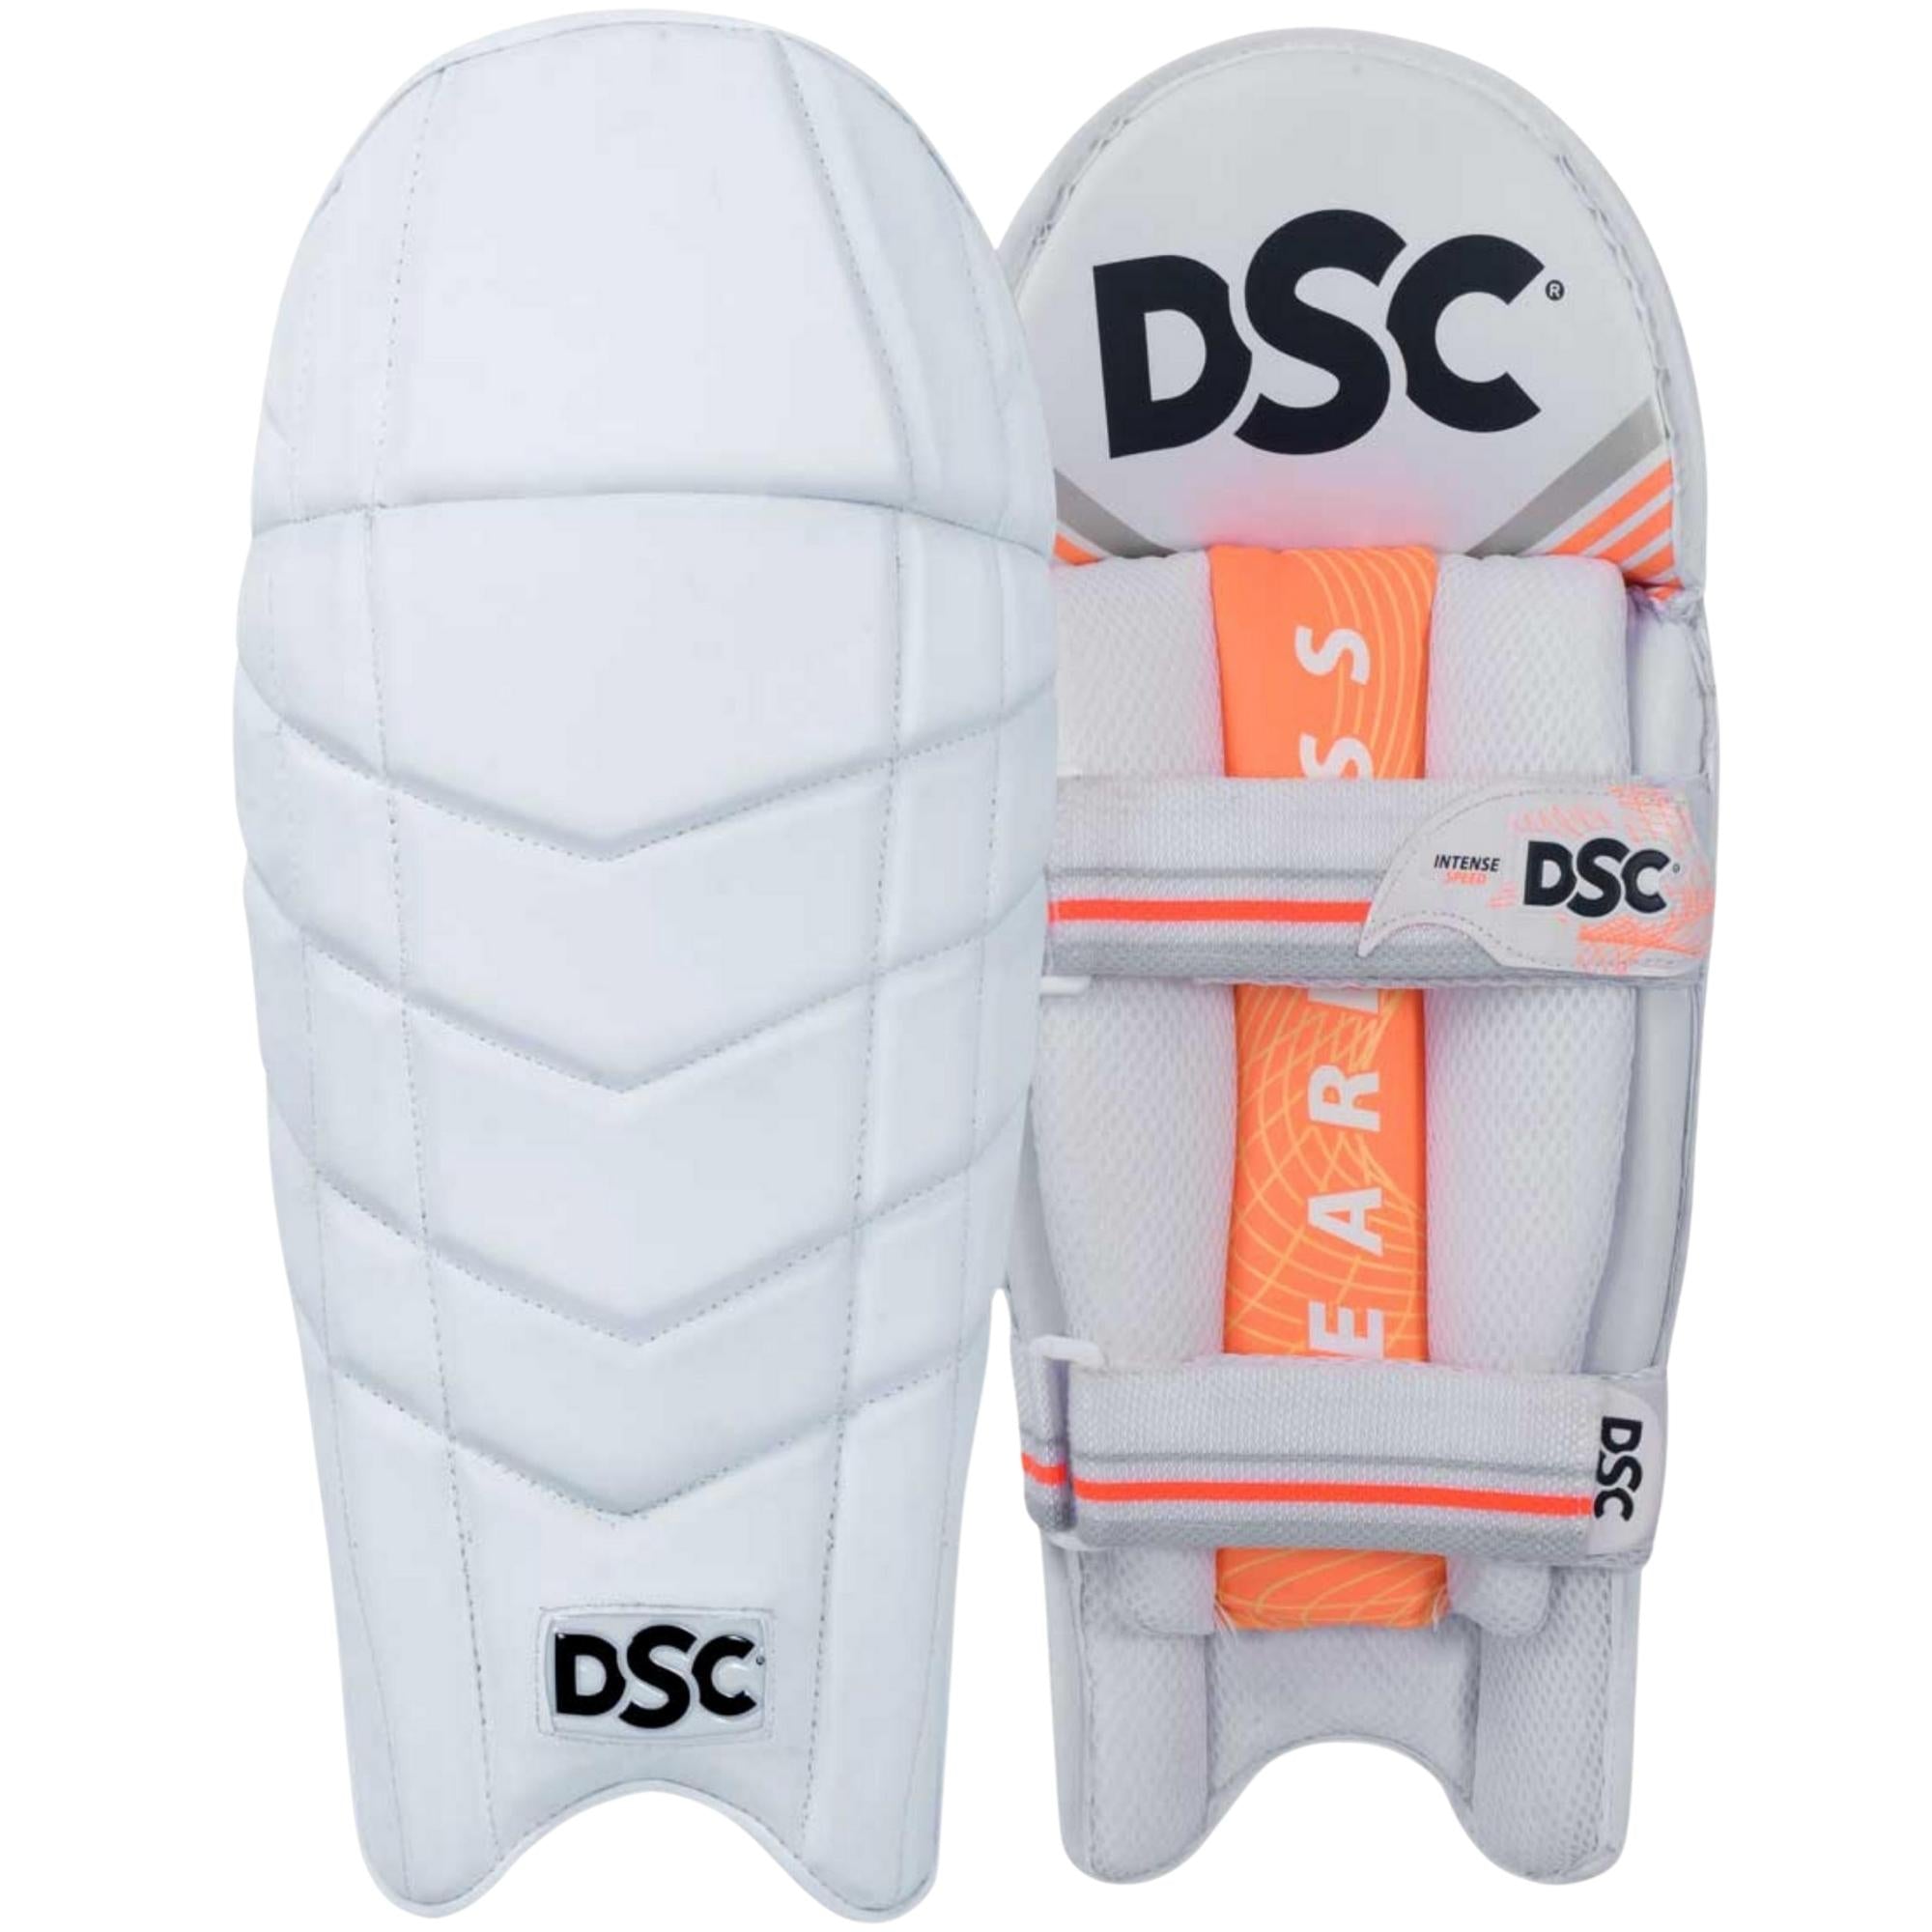 DSC Intense Speed Wicket Keeping Pads